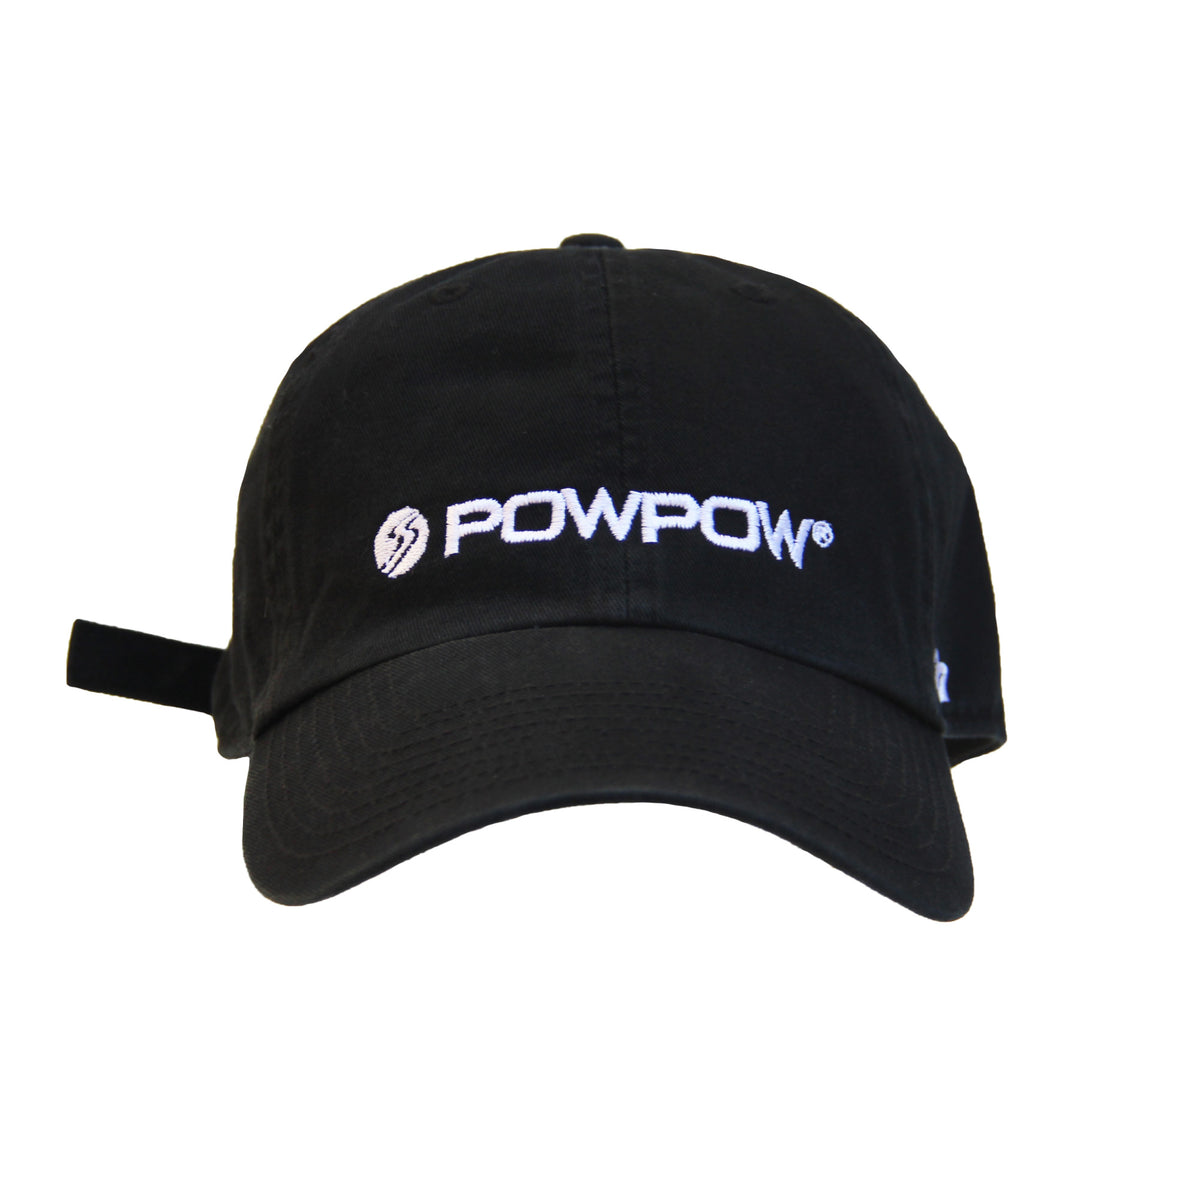 Powpow Baseball Cap